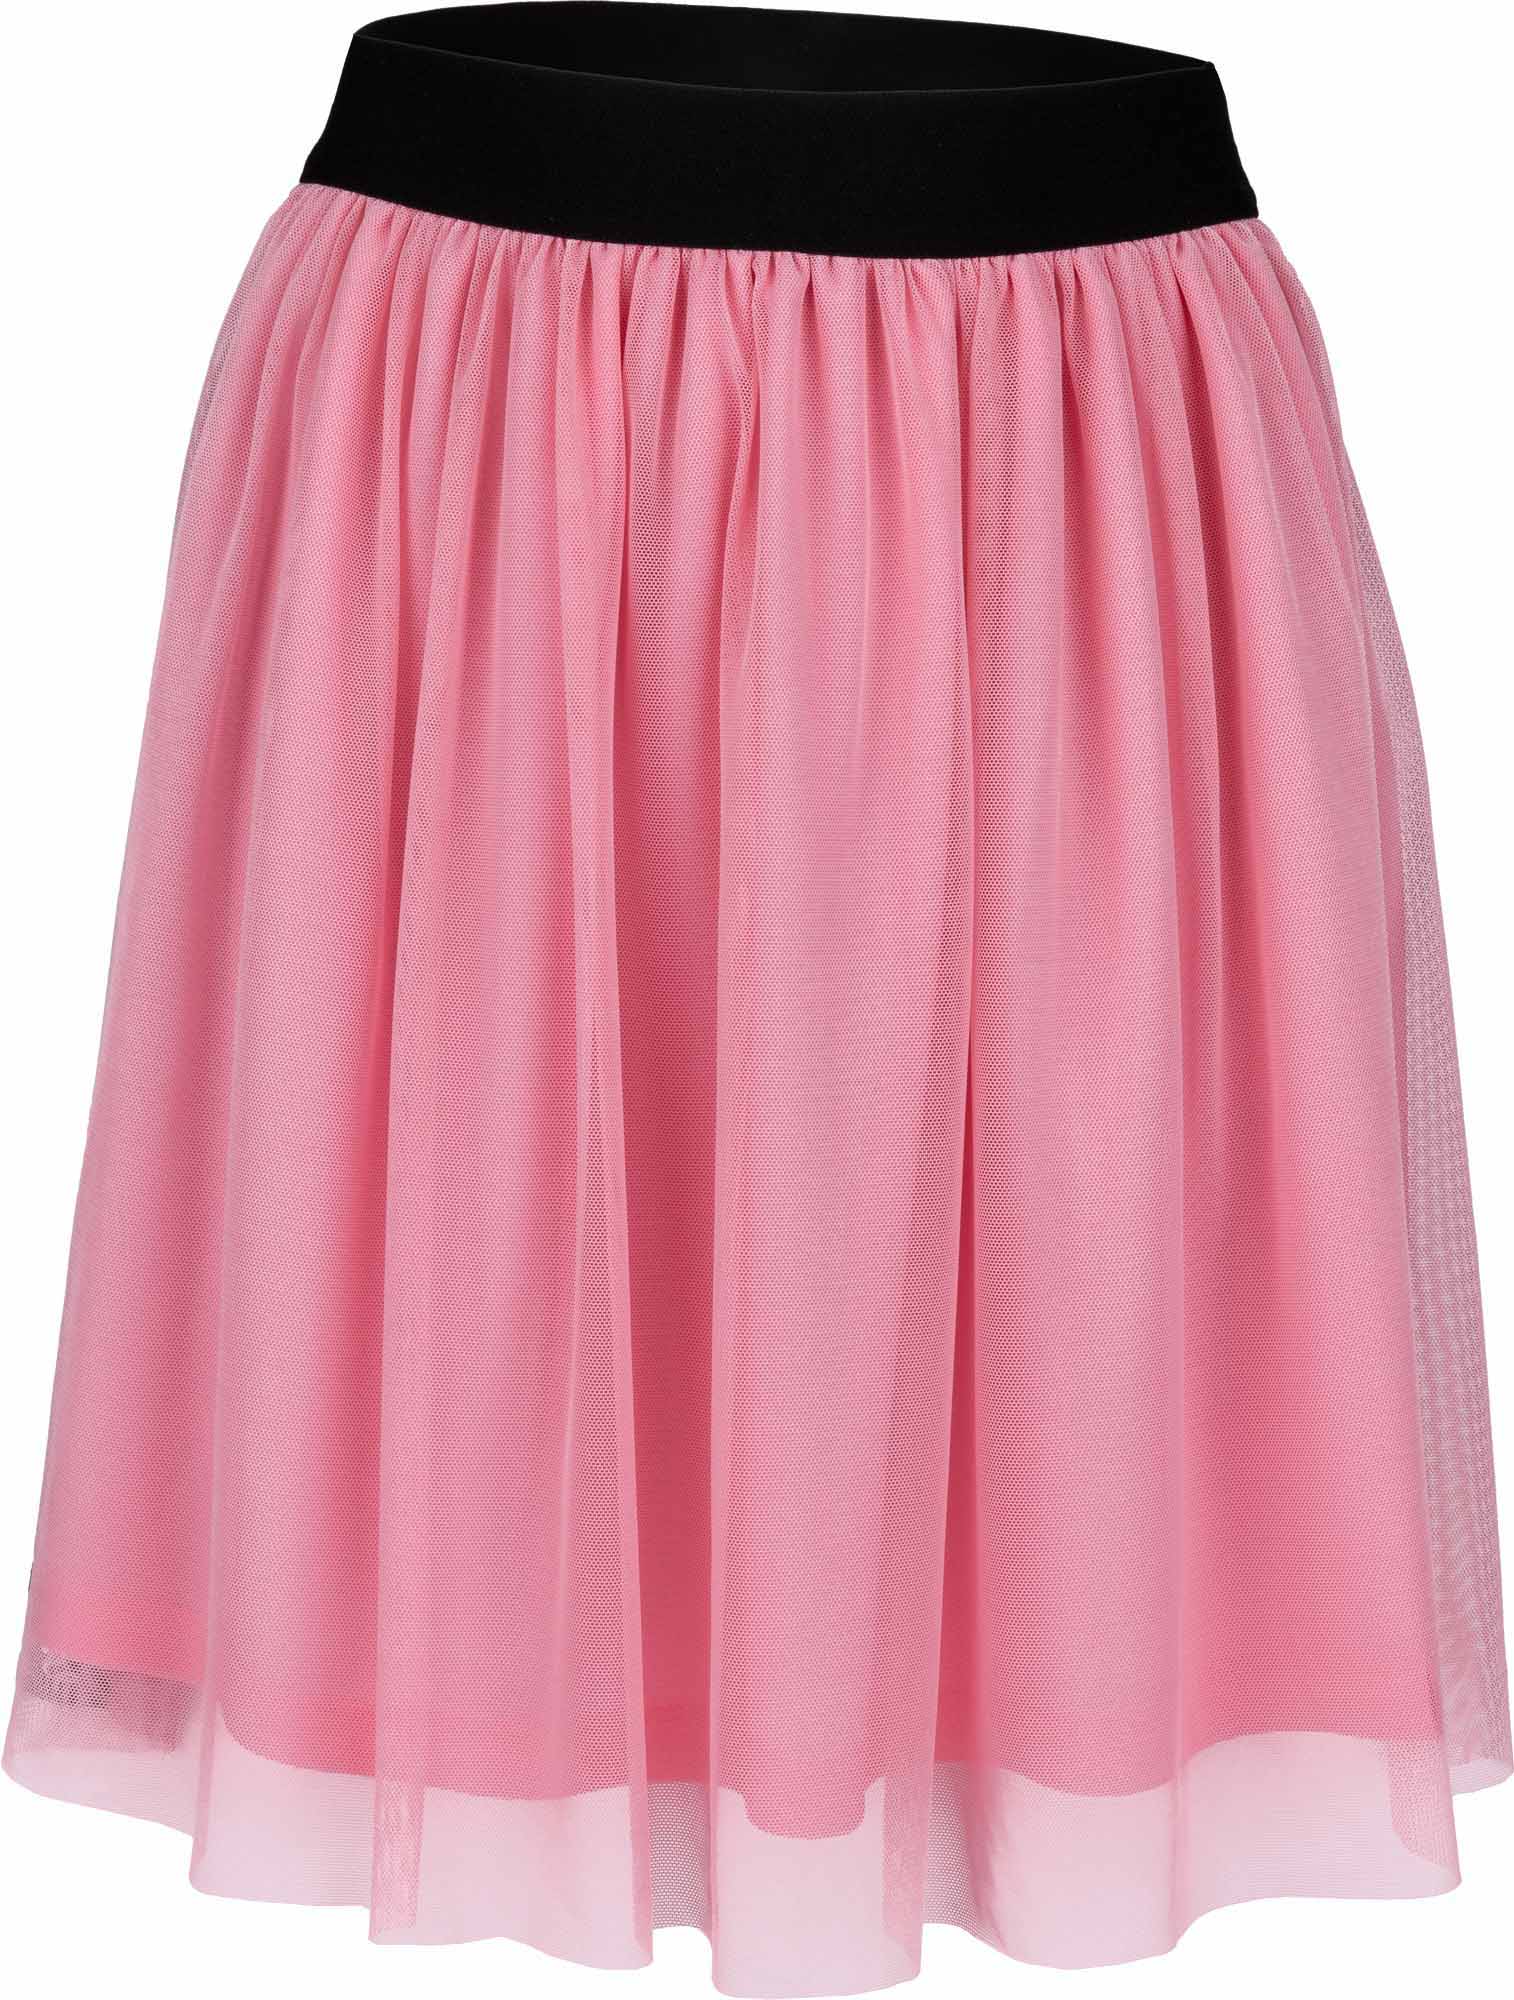 Girls' skirt